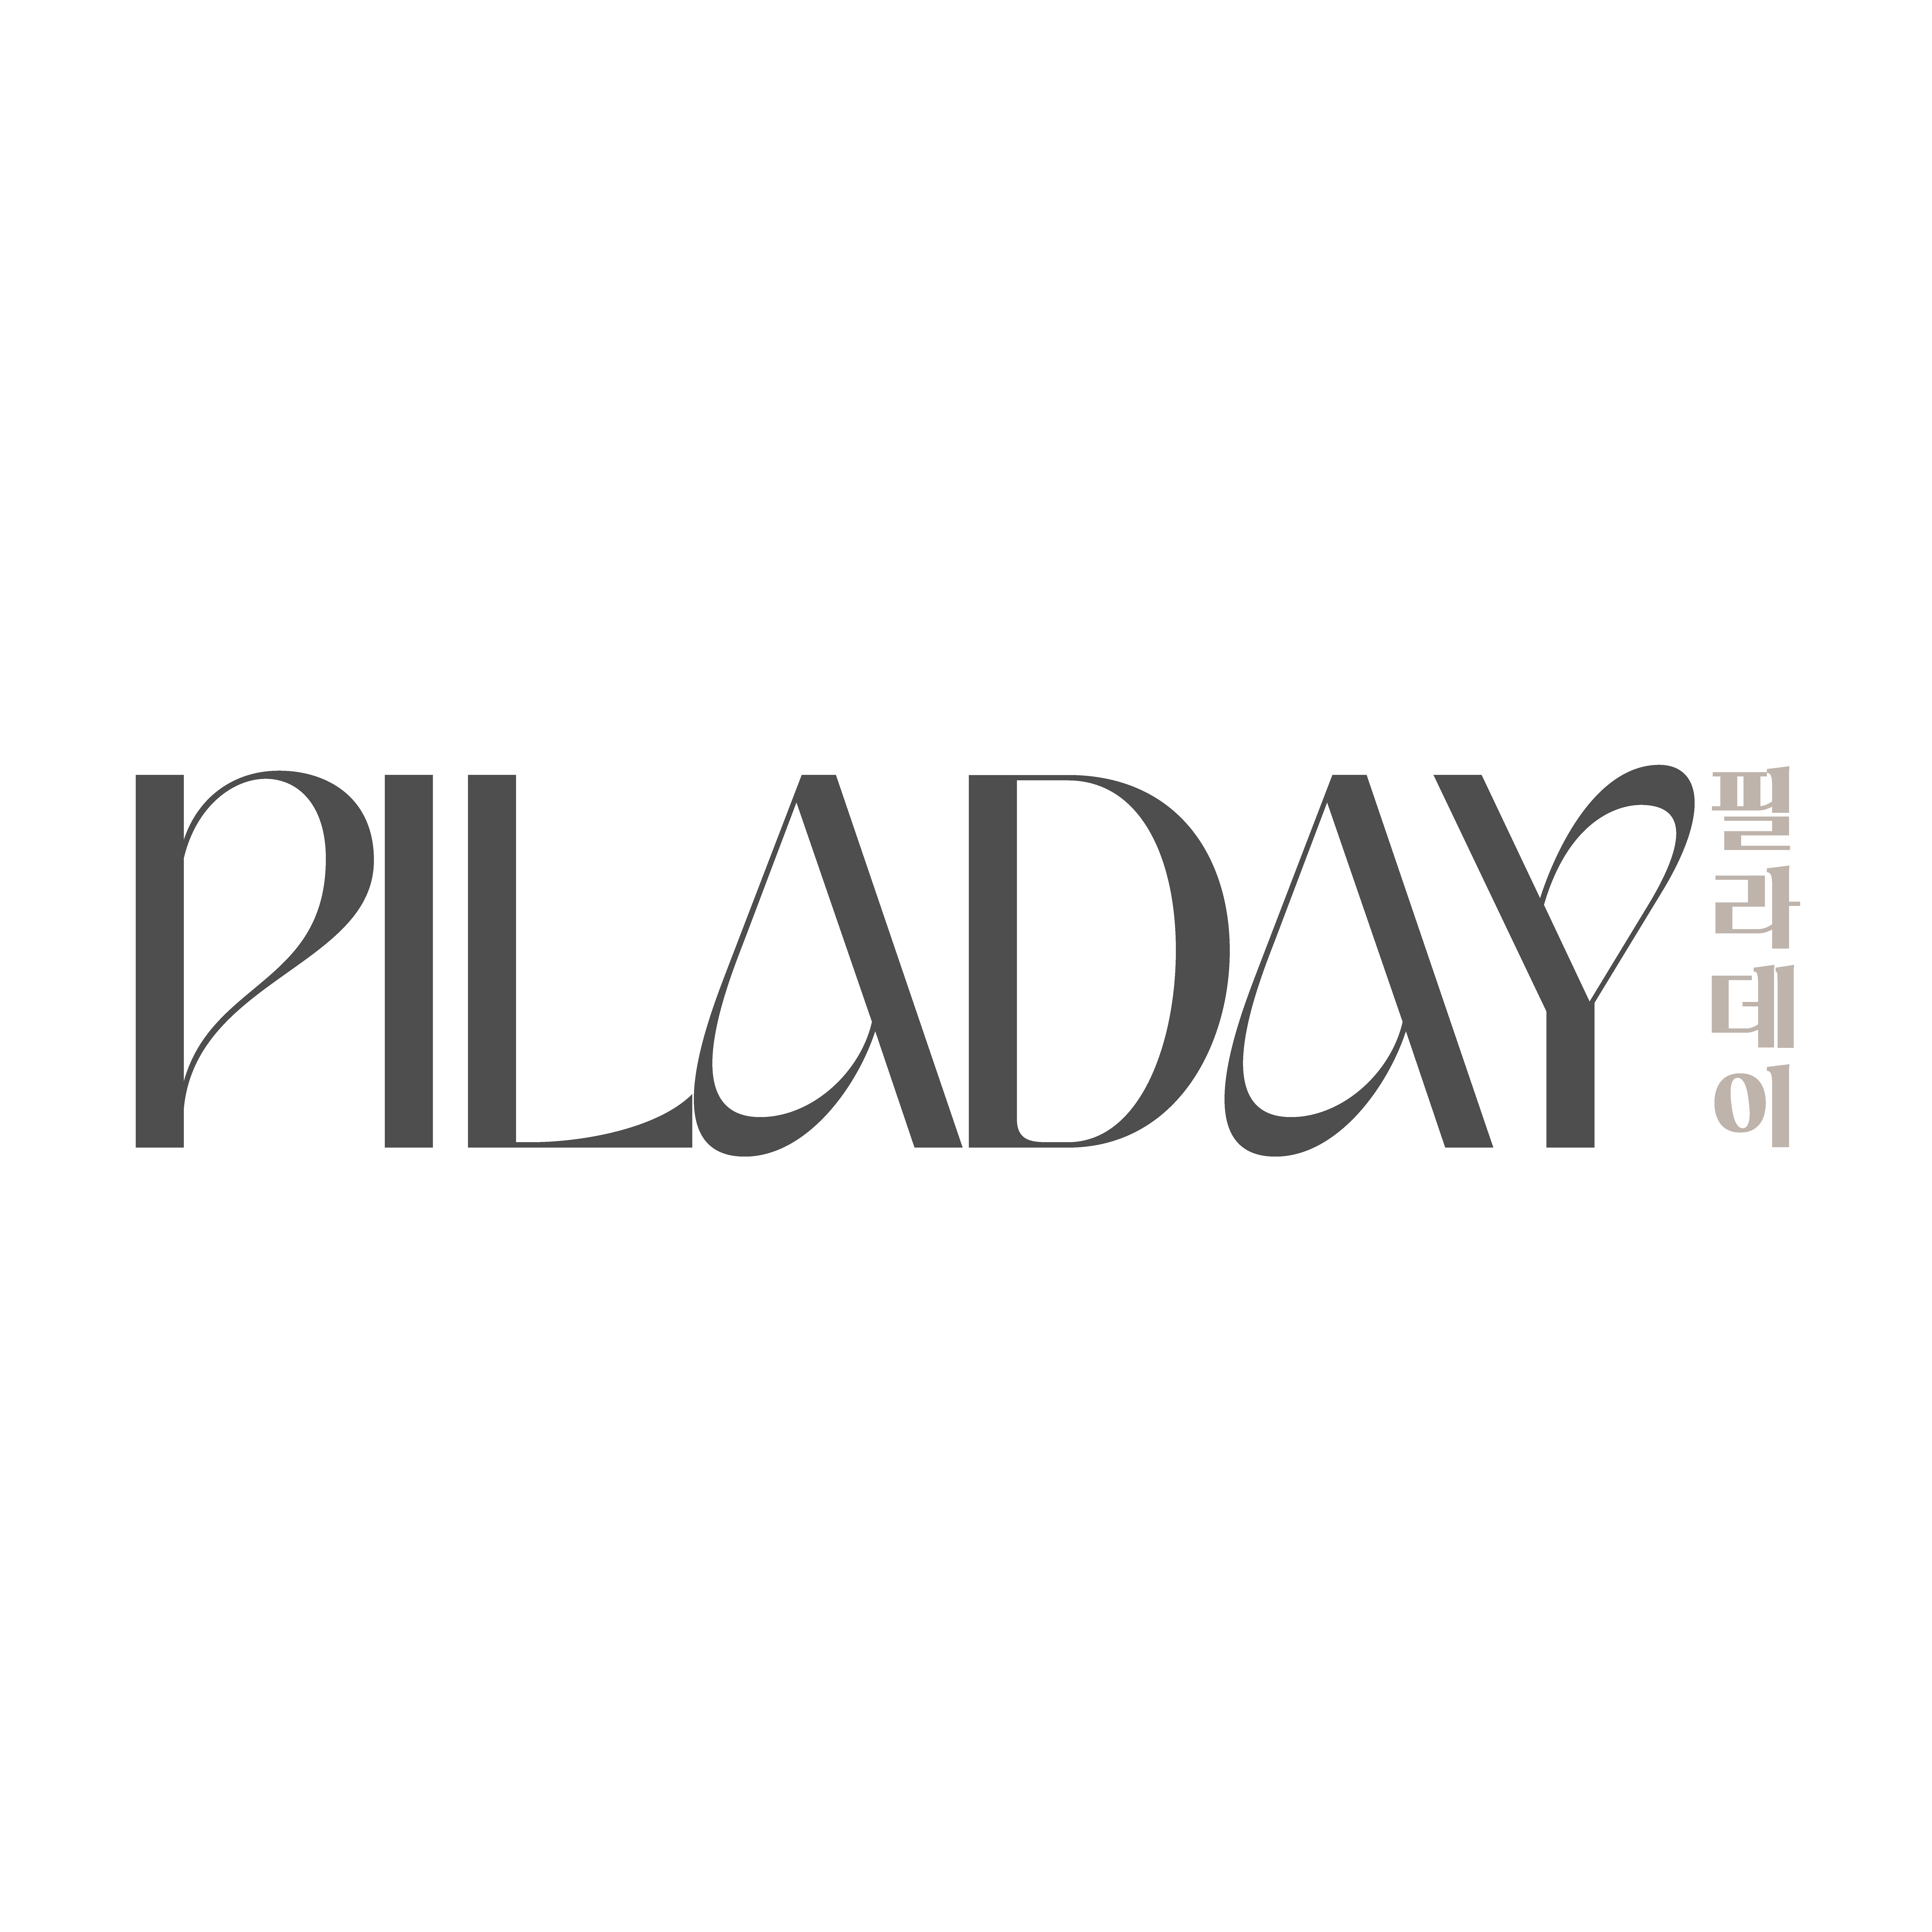 Piladay Pte. Ltd. logo